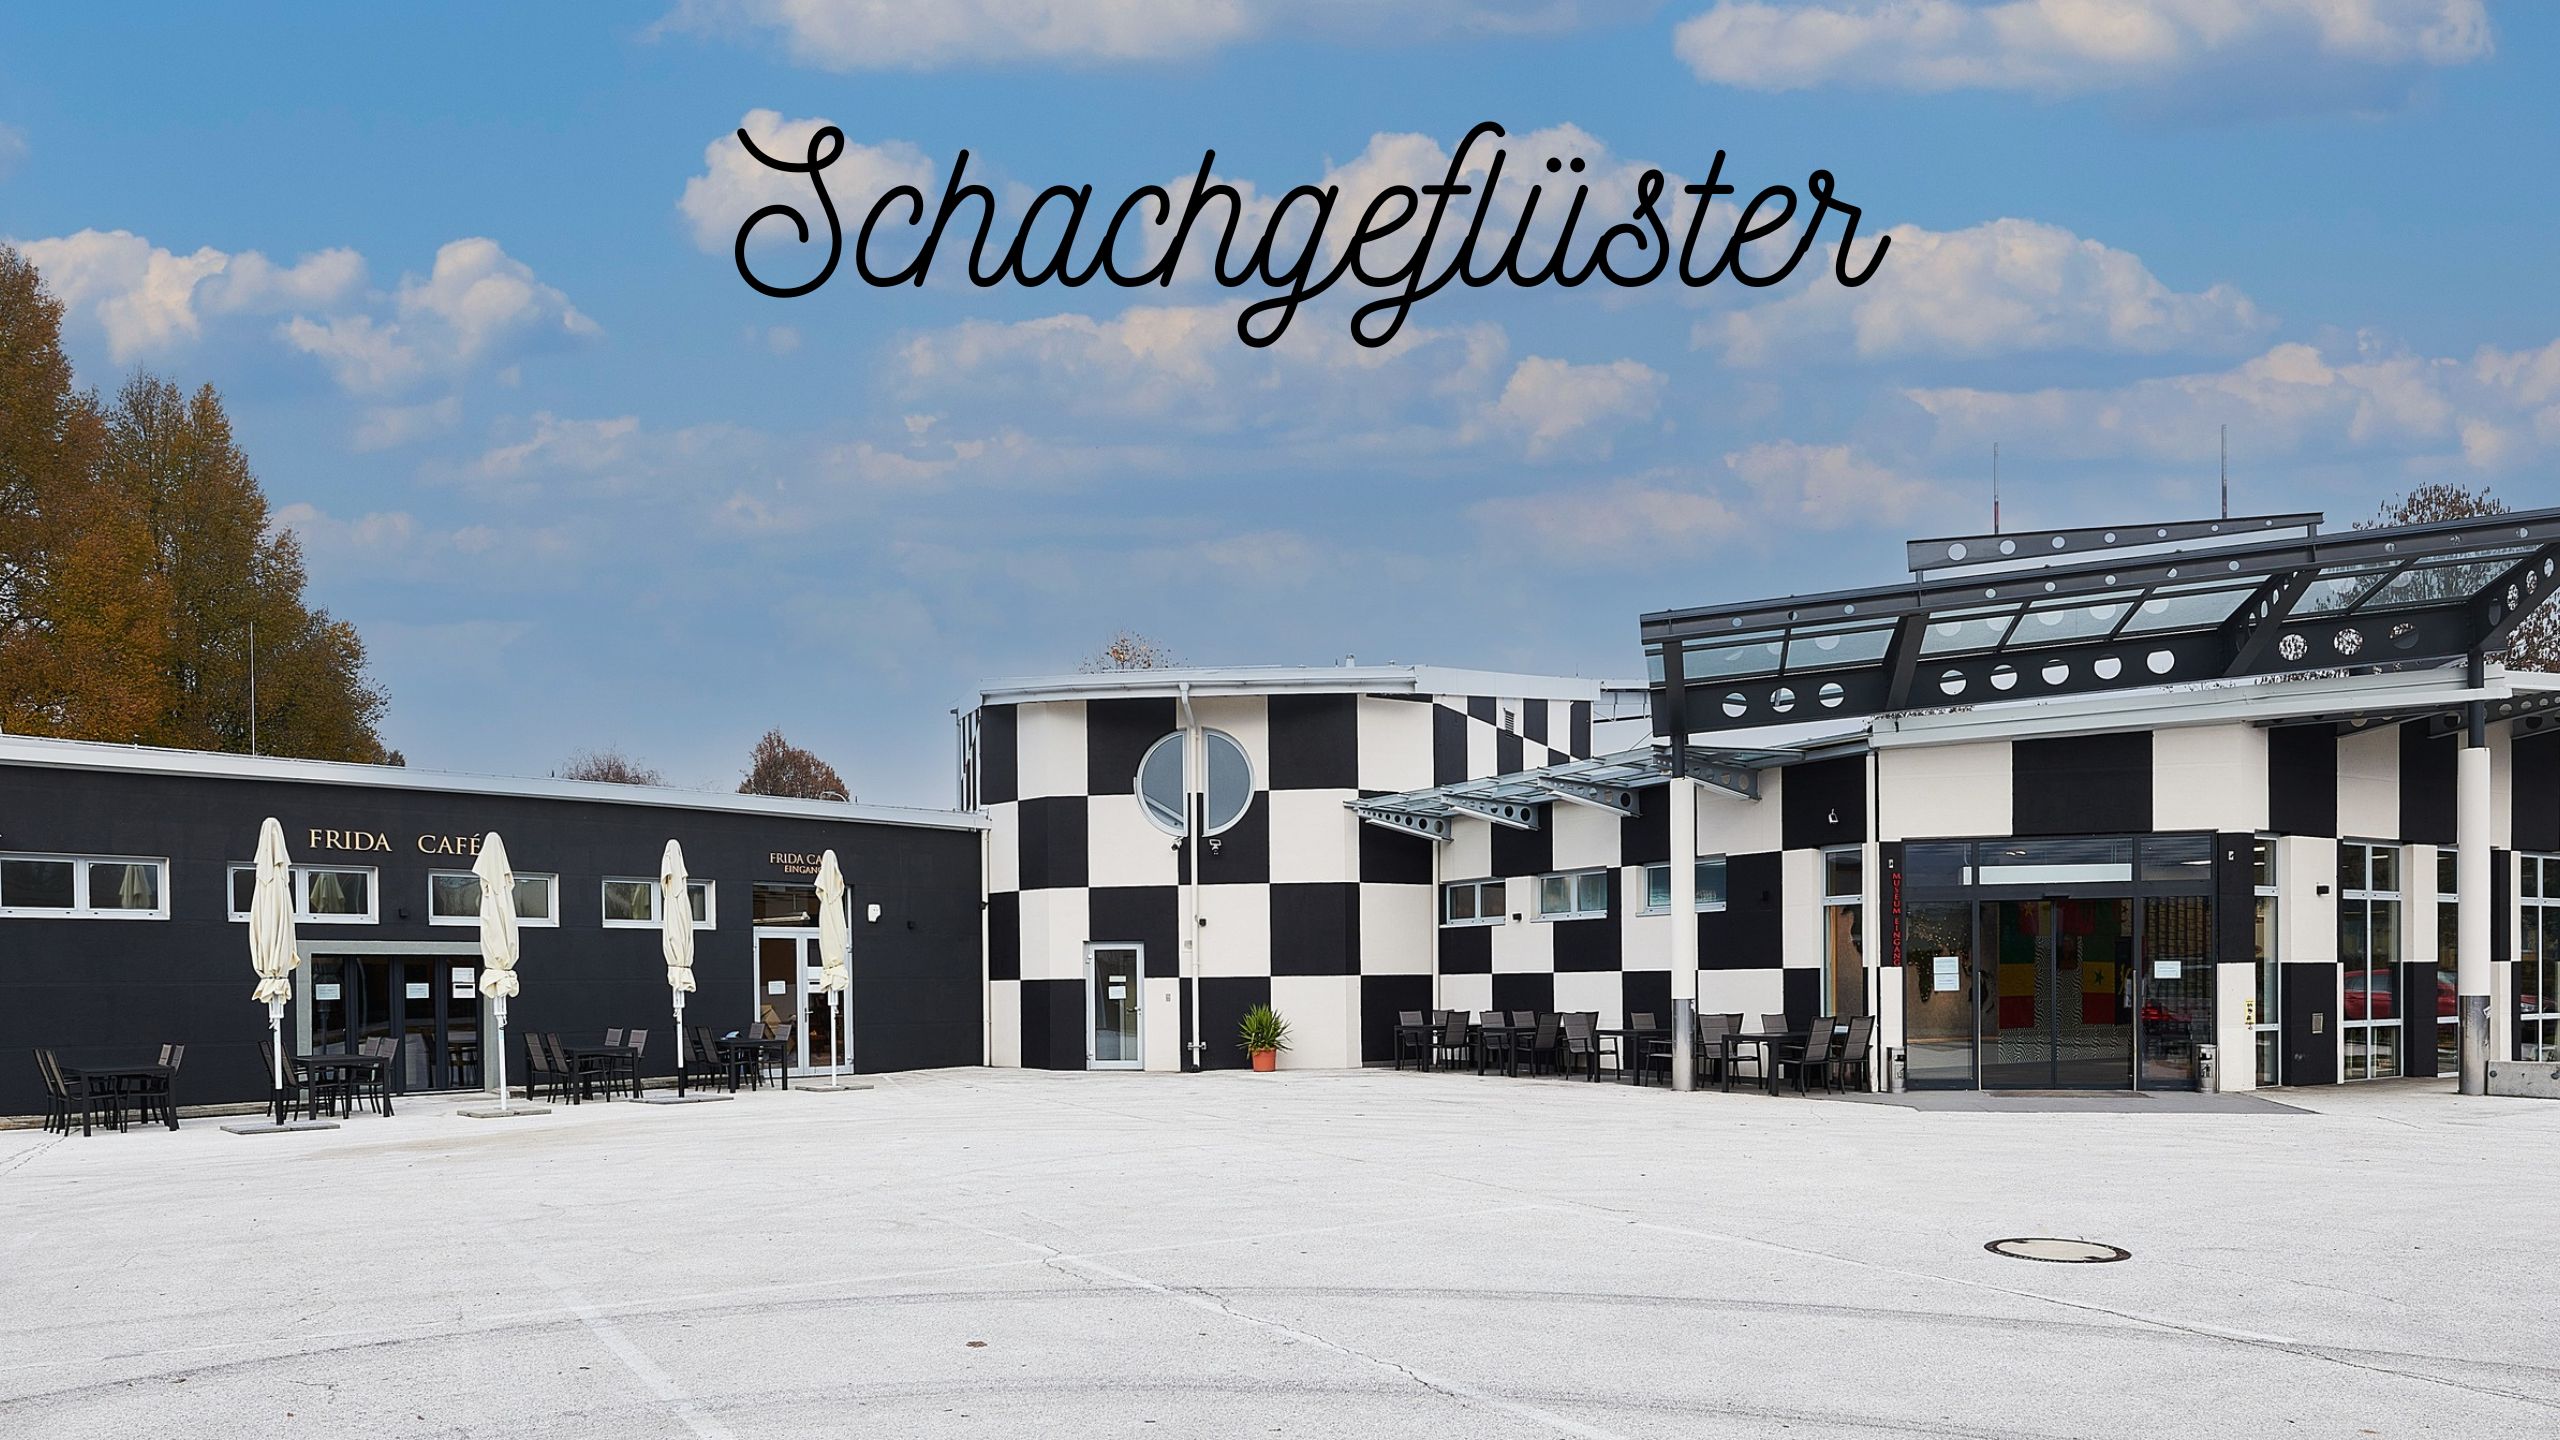 Schachmuseum Klagenfurt